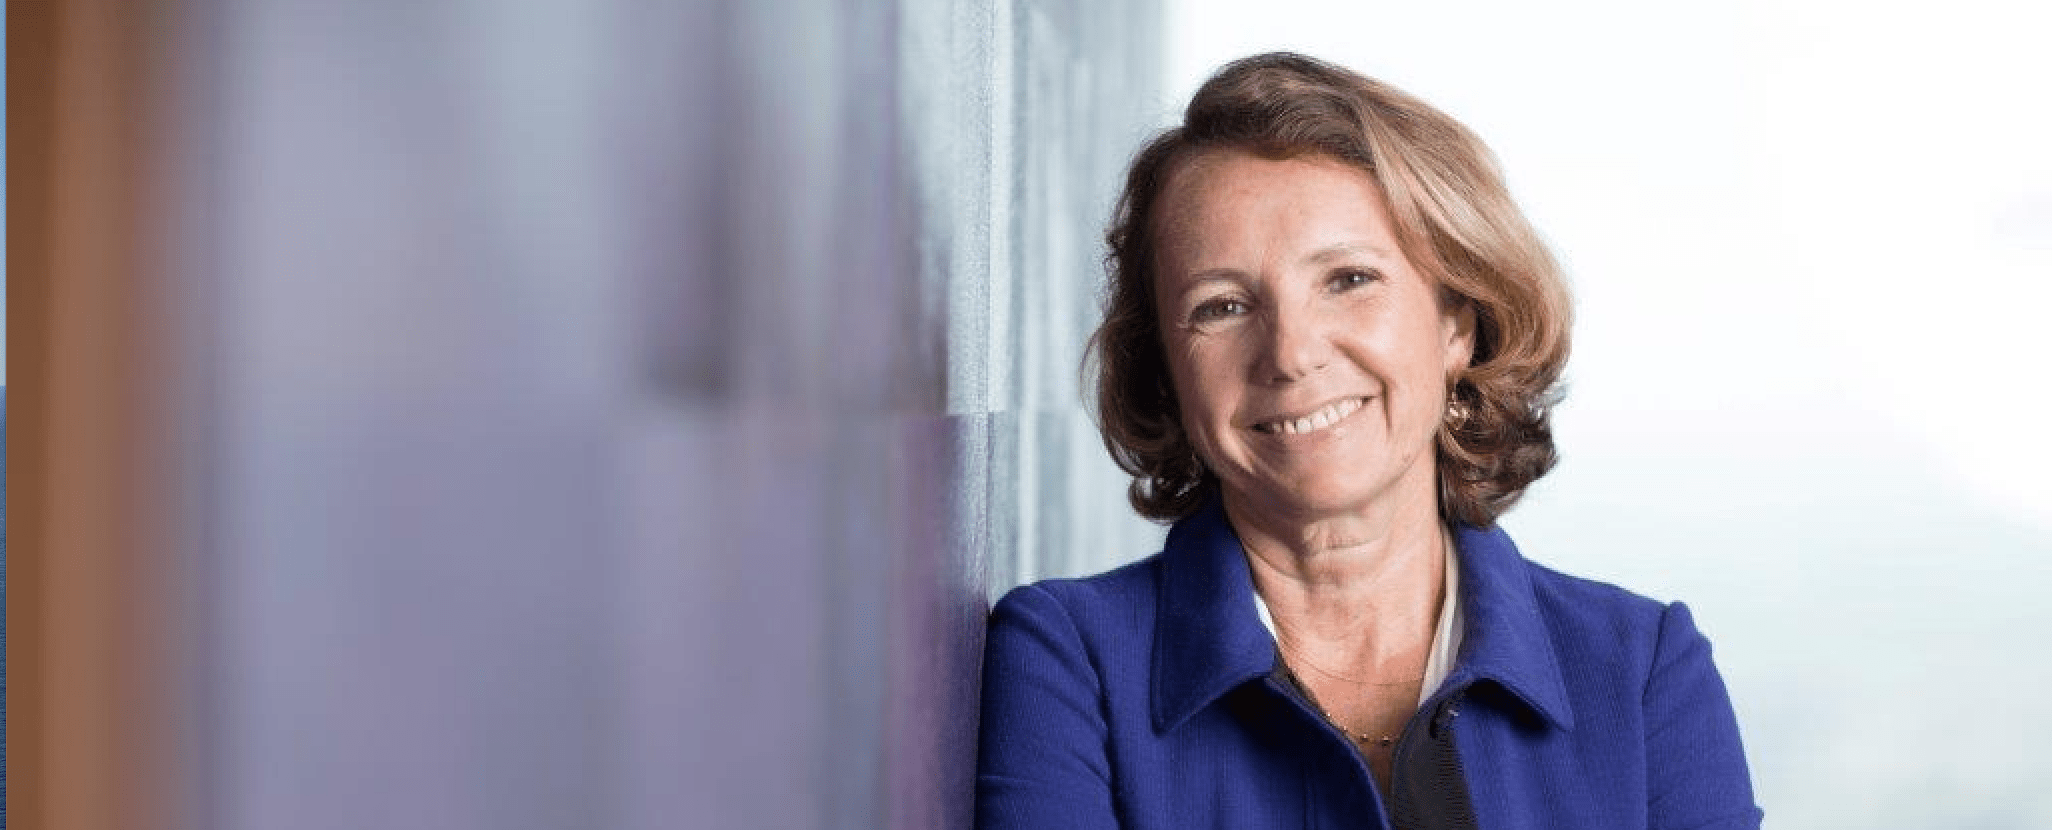 Marie-Ange Debon mianowana prezesem wykonawczym Keolis